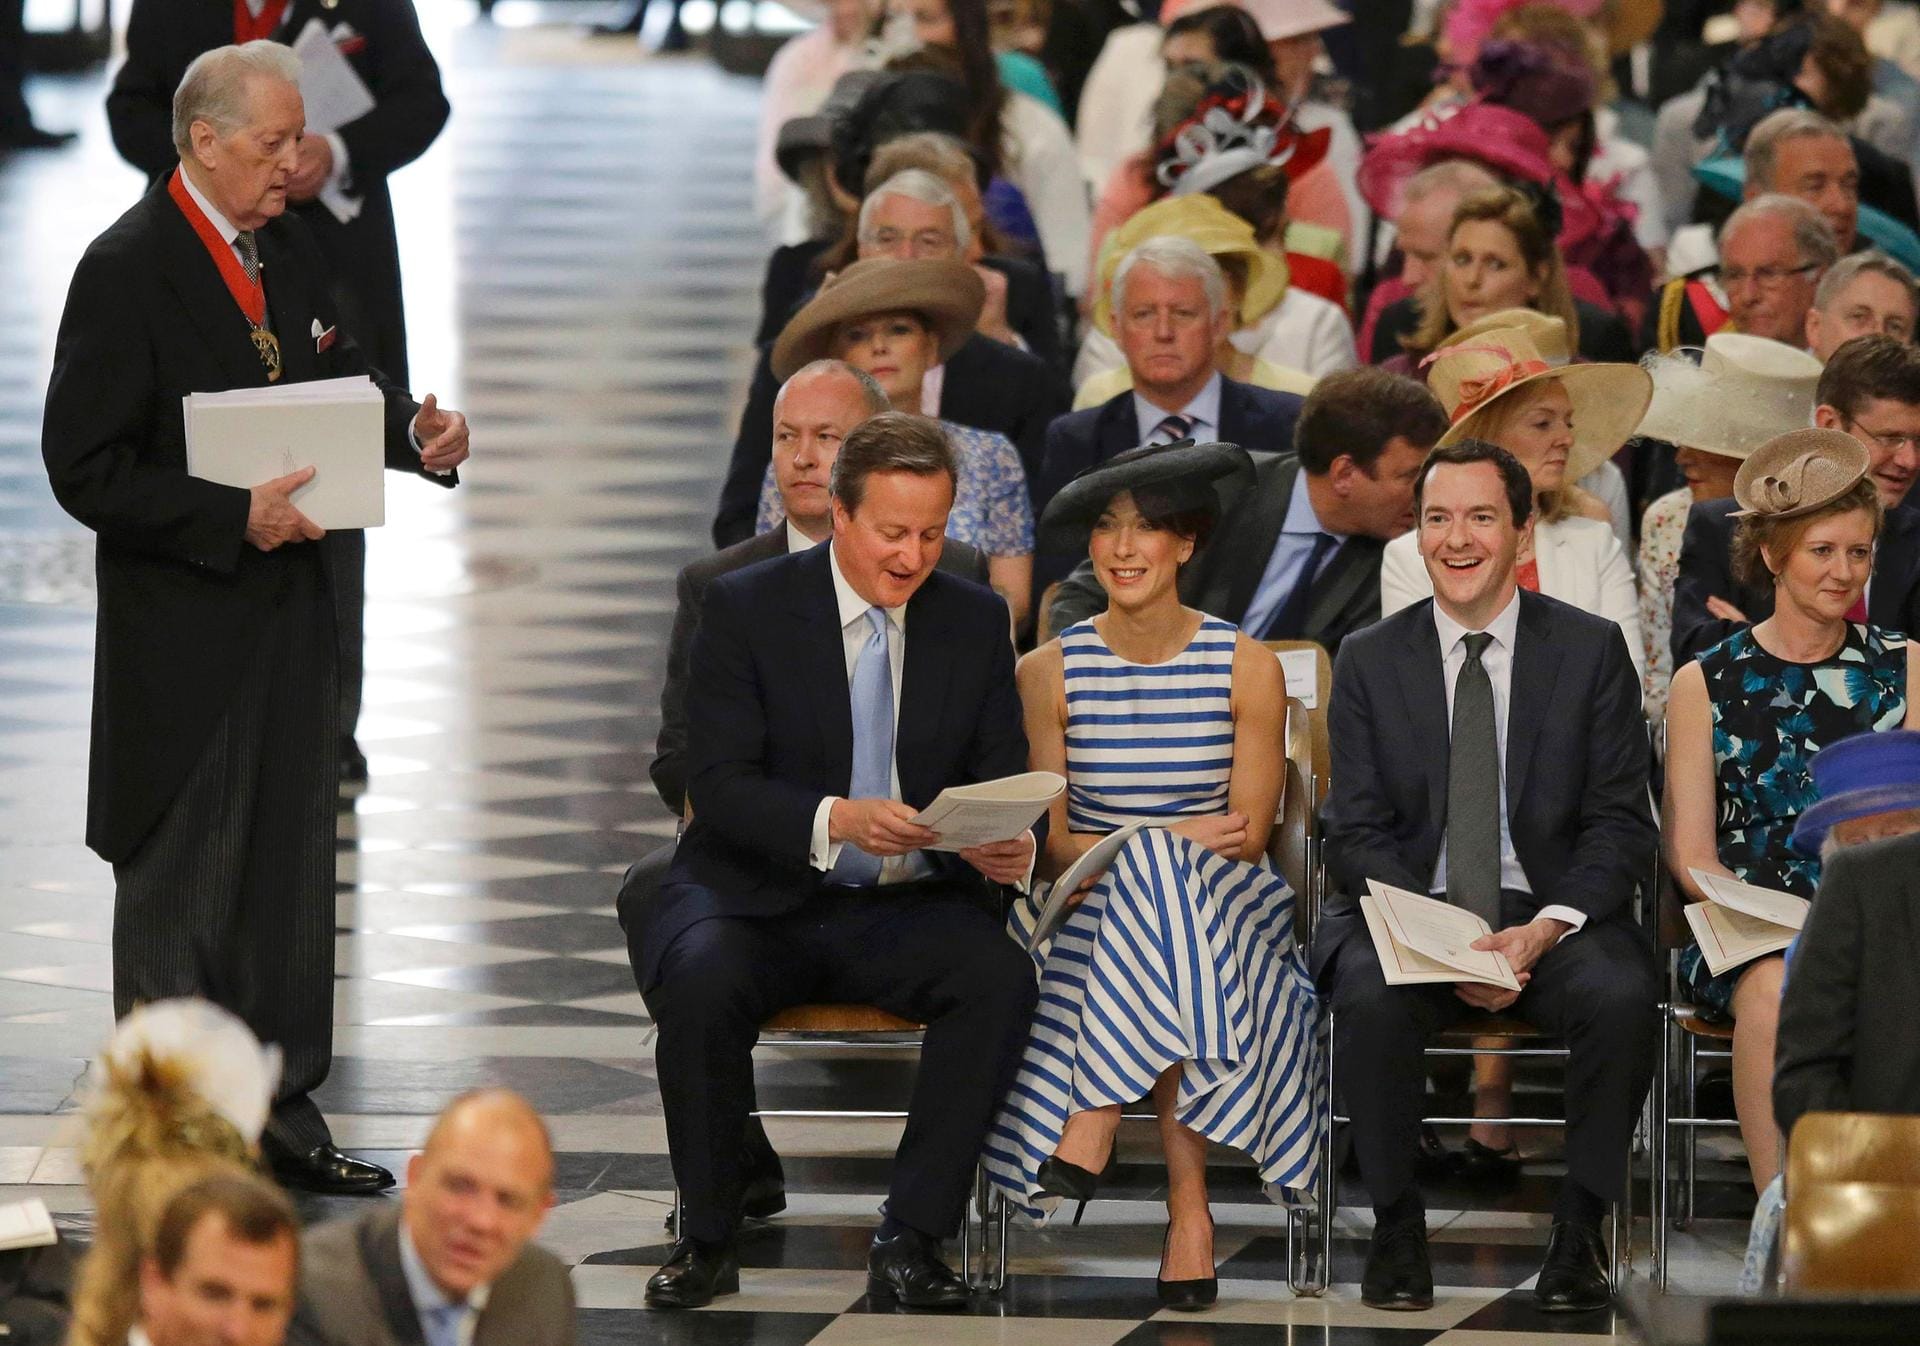 Der britische Premierminister David Cameron (li.) schien sich über das Programm zu freuen. Neben ihm sitzt seine Frau Samantha, daneben wiederum der Schatzkanzler bzw. Finanzminister George Osborne.